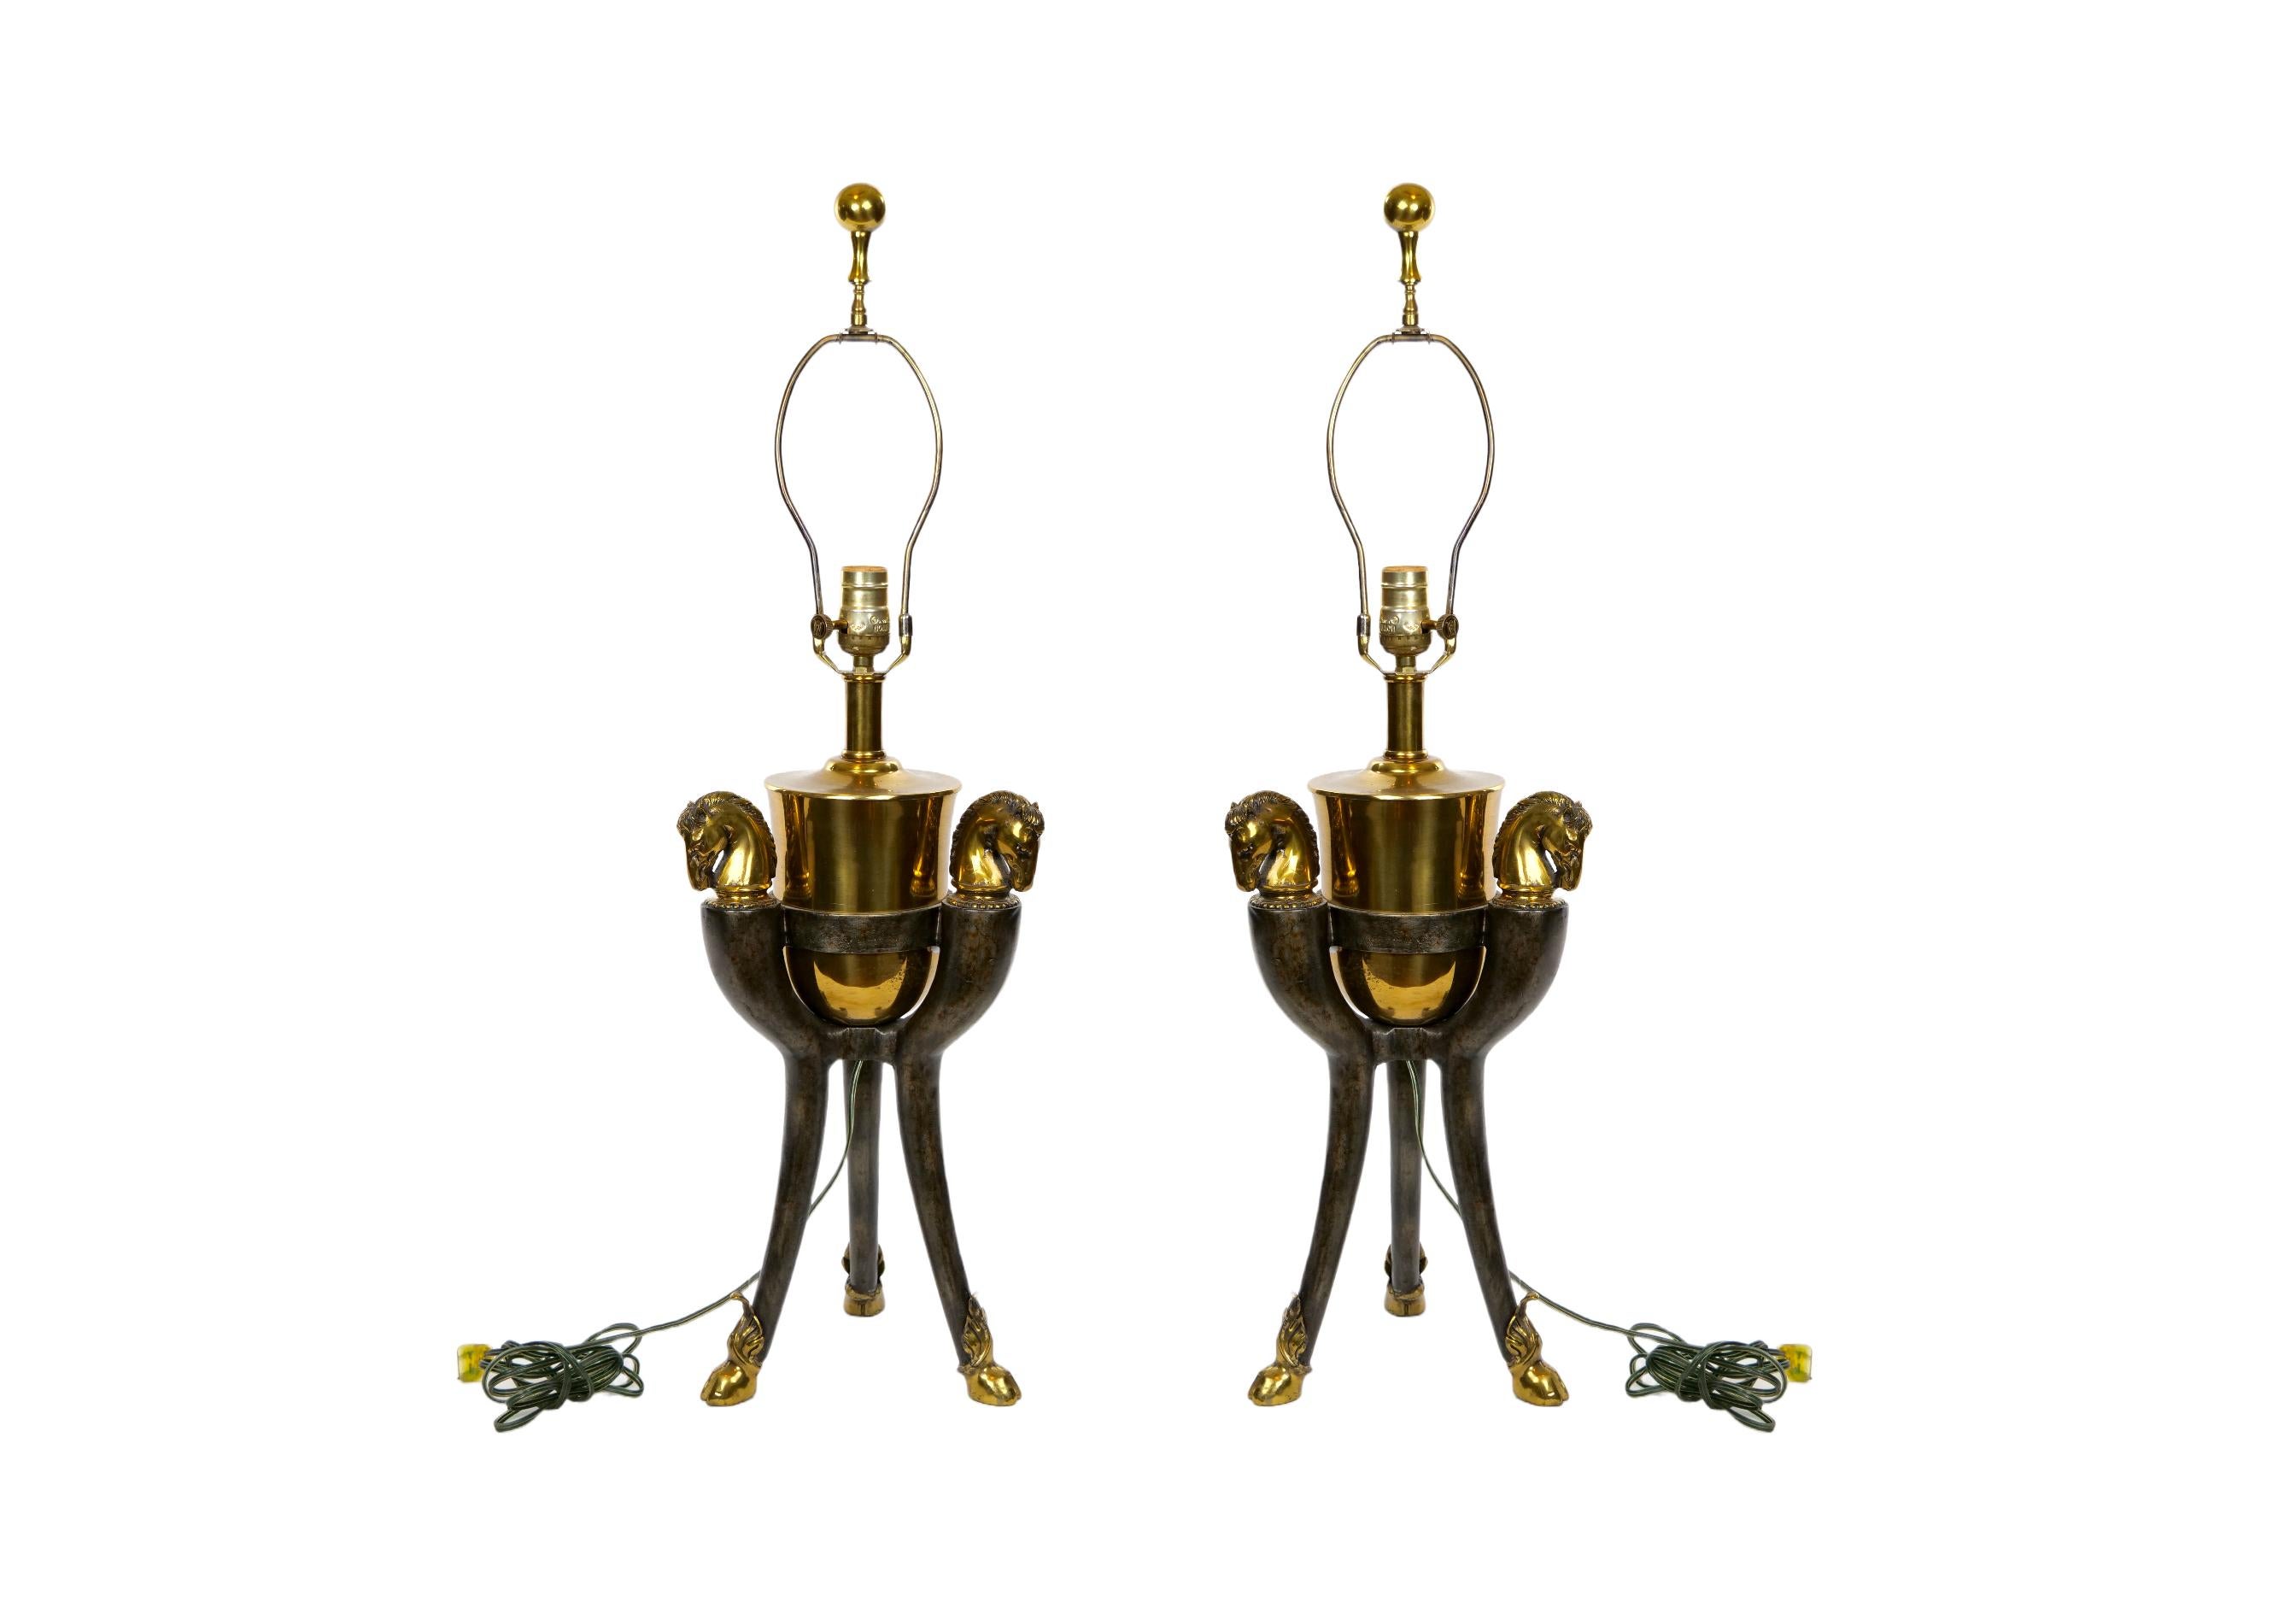 Fin du 20e siècle bronze et laiton doré  Paire de lampes de table décoratives en forme de tête de cheval. Chaque lampe présente un plateau en laiton doré avec trois détails en forme de tête de cheval reposant sur trois pieds dorés avec un motif de